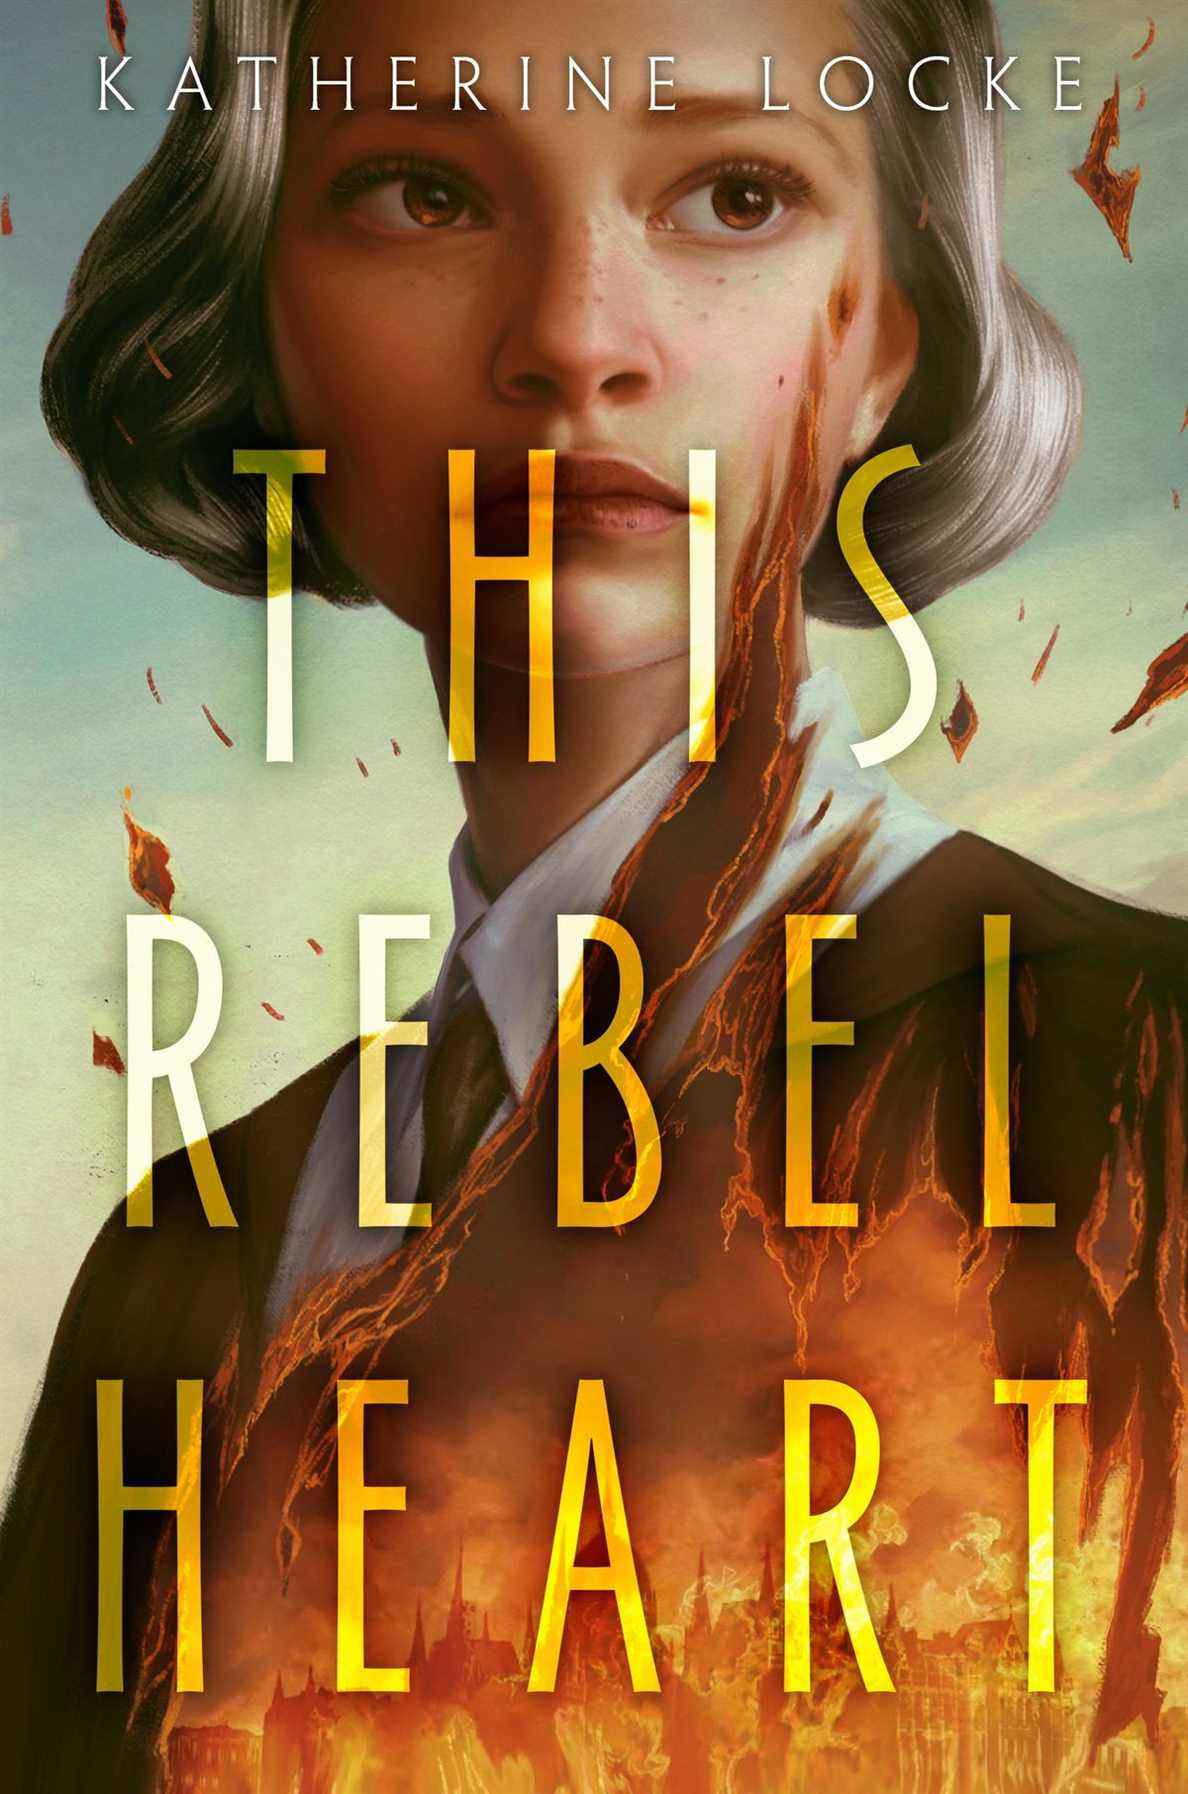 La couverture de This Rebel Heart, avec une jeune femme superposée sur une ville en feu.